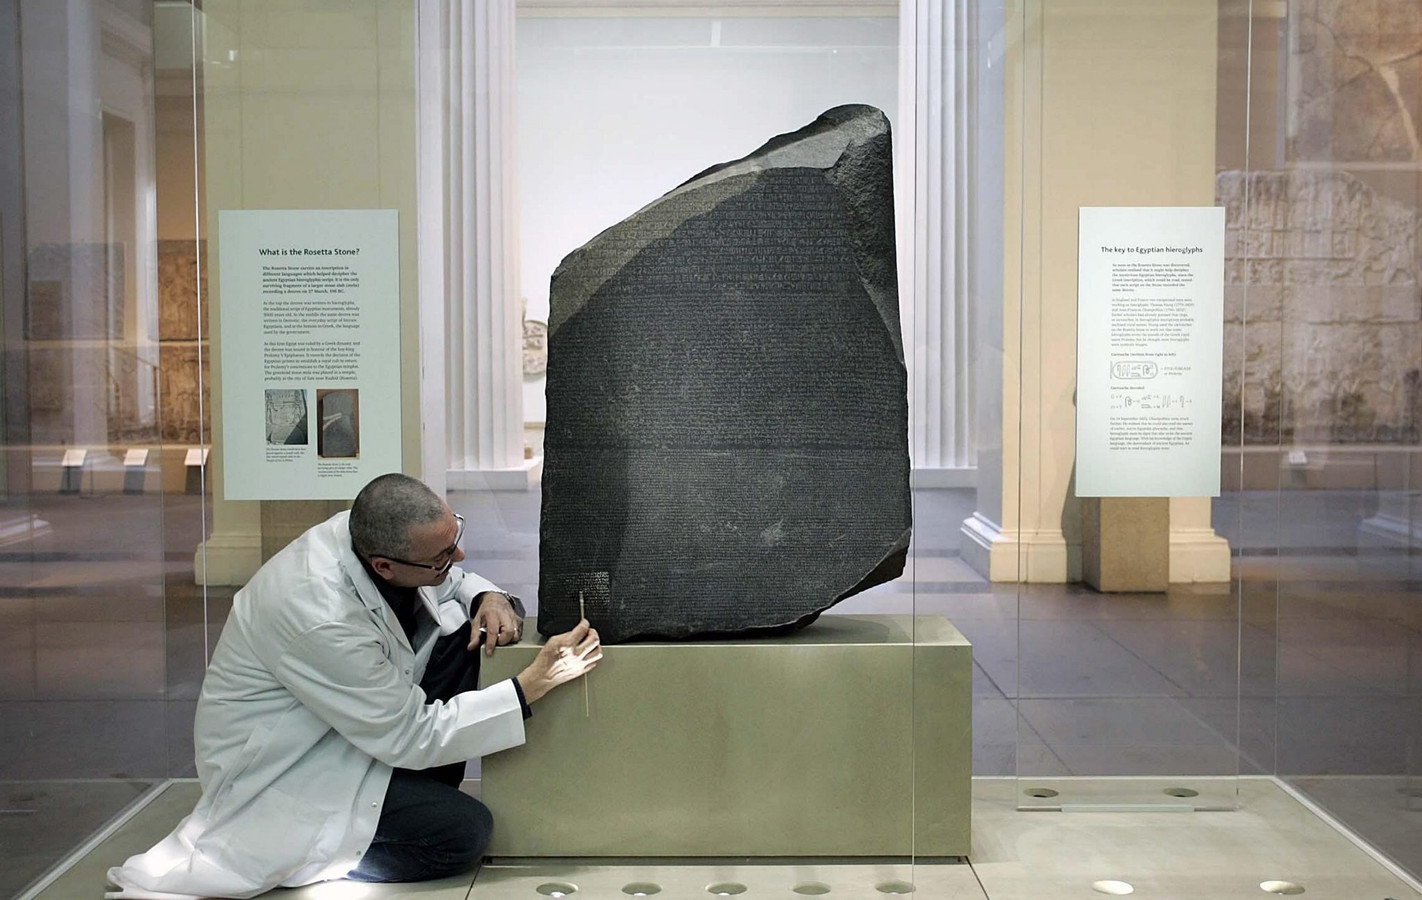 De zogenoemde Steen van Rosetta in het British Museum is een van de bekendste voorbeelden van een kleitablet met onder meer spijkerschrift.